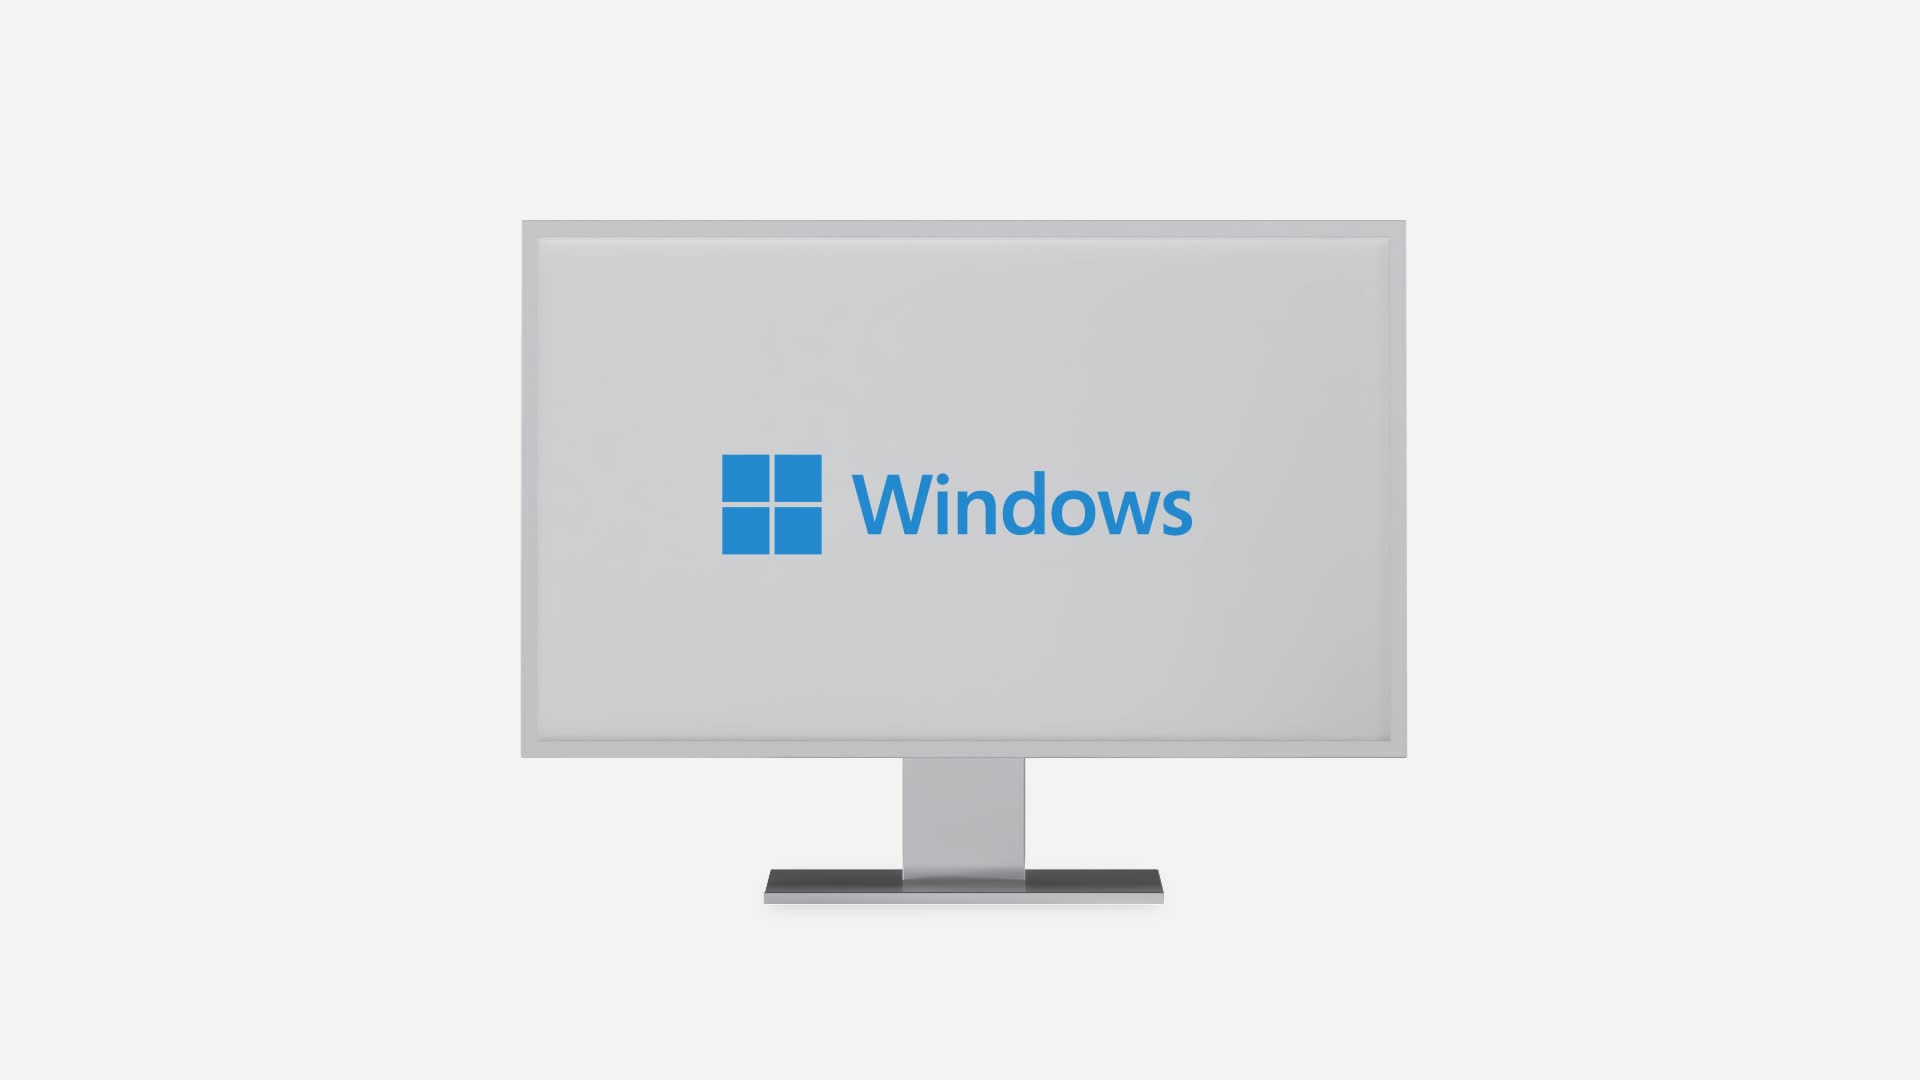 Windows 11 Pro : Accédez à la puissance professionnelle et à l'innovation  avec la dernière version du système d'exploitation de Microsoft pour les  entreprises – Univers activation